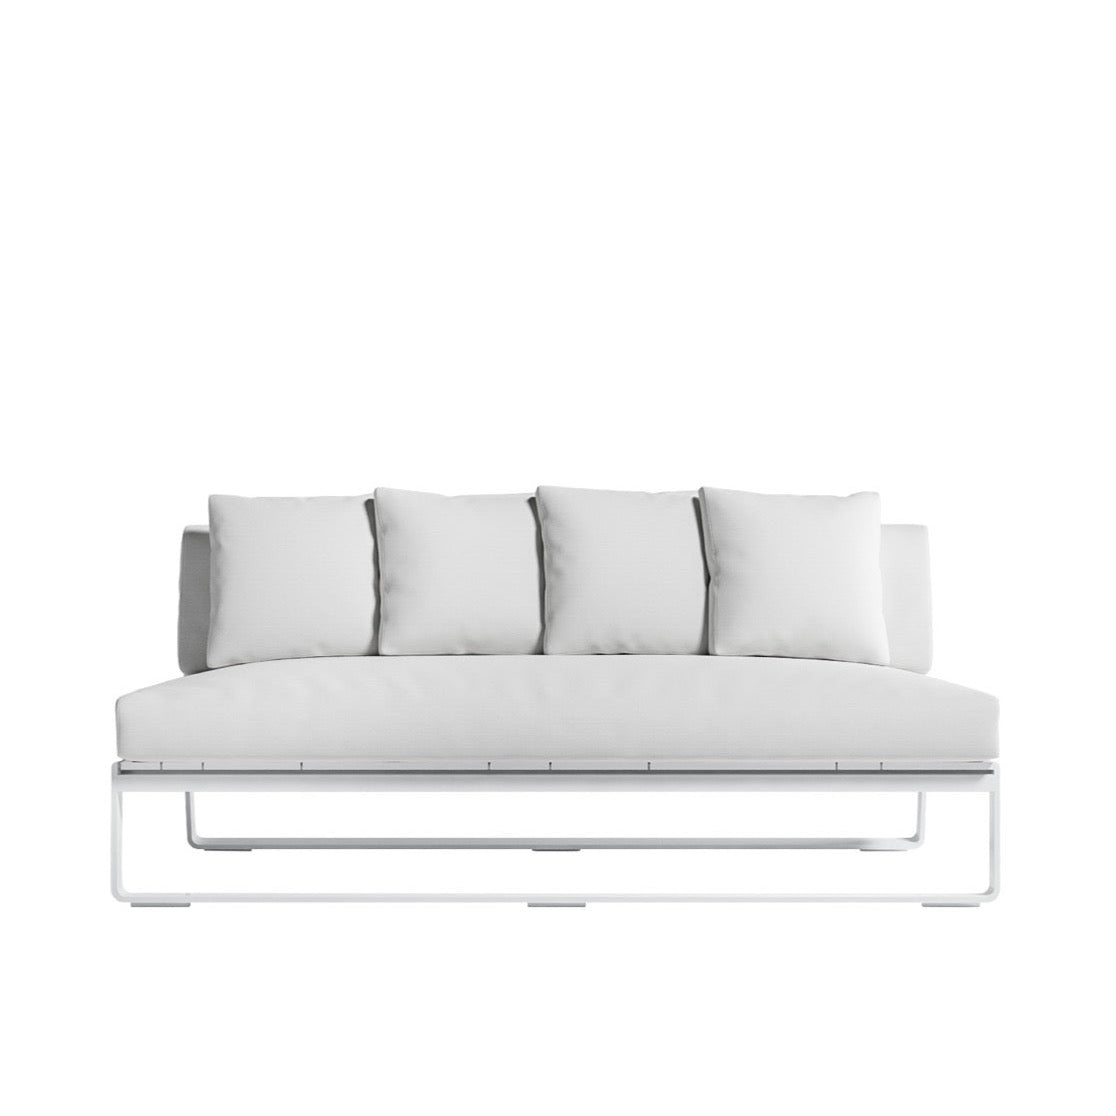 Gandia Blasco Flat Sofa without armrests Sectional 4